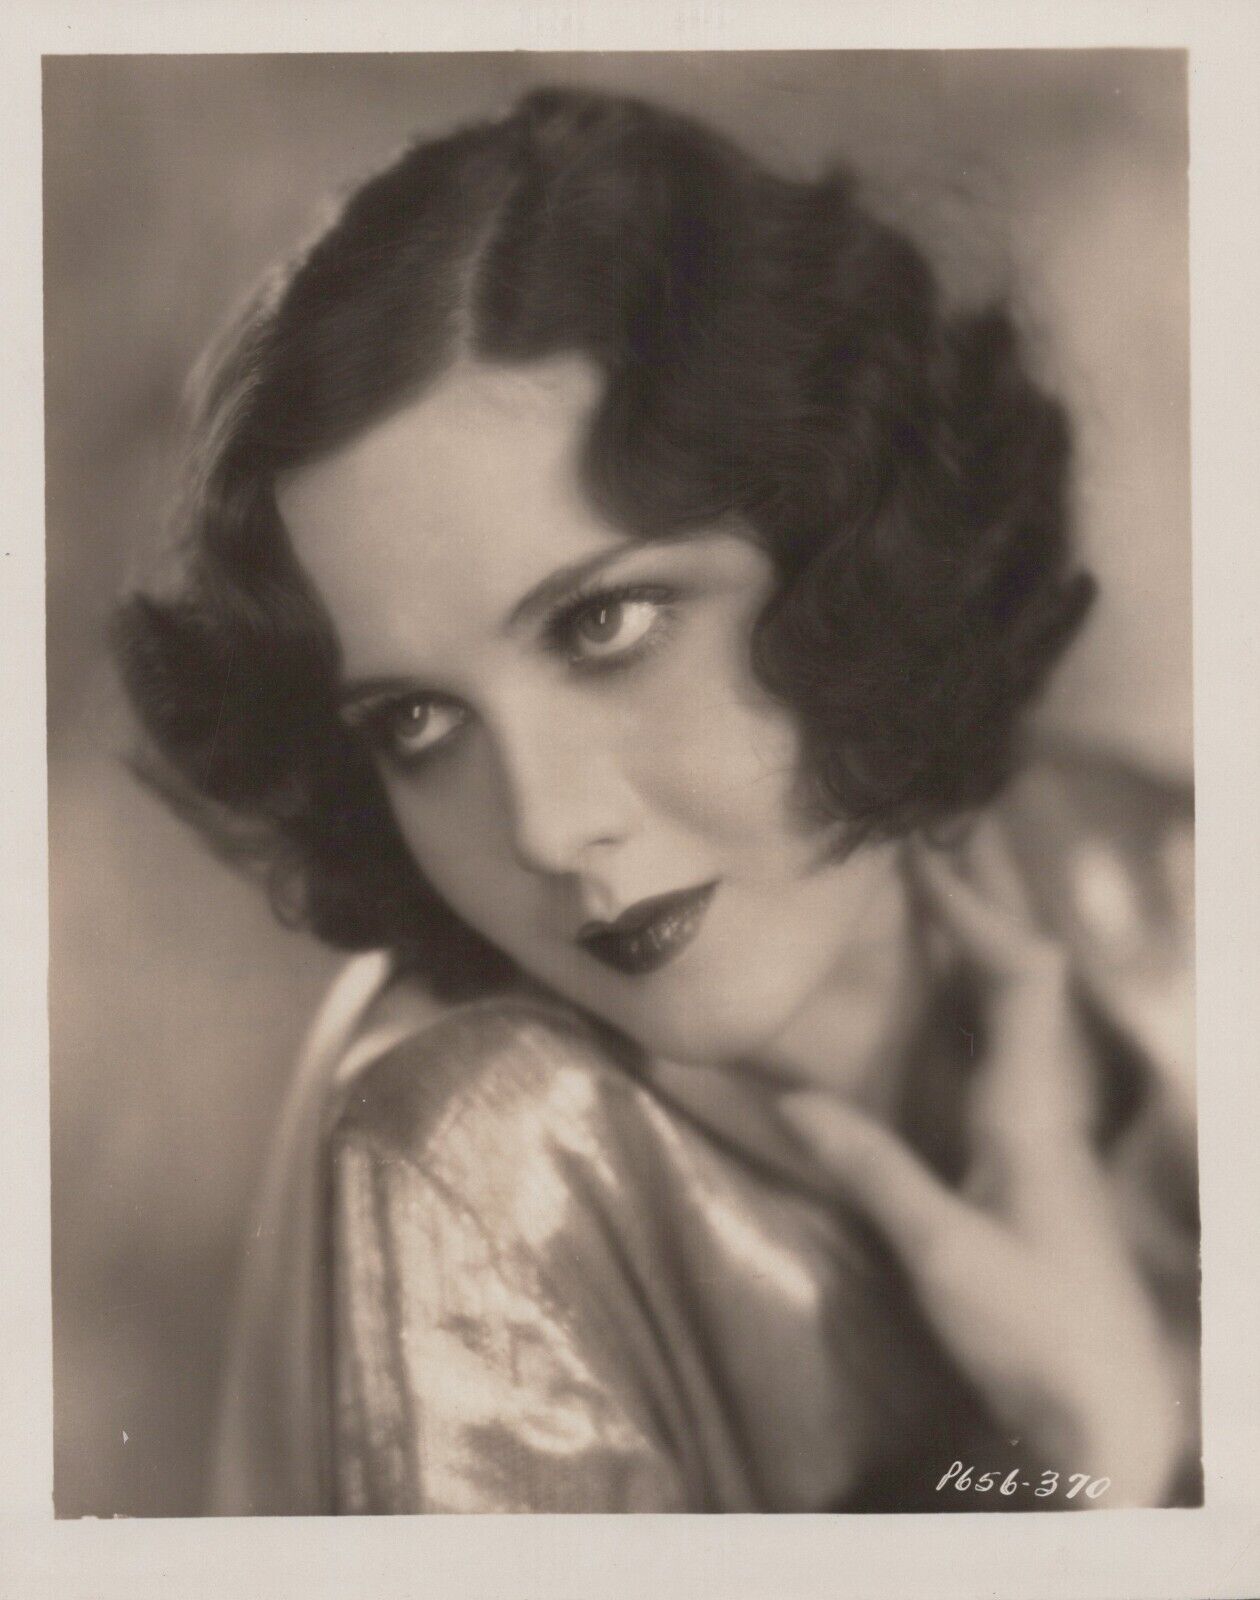 Mary Brian (1930s) ❤ Original Vintage - Stylish Glamorous Hollywood Photo K 265